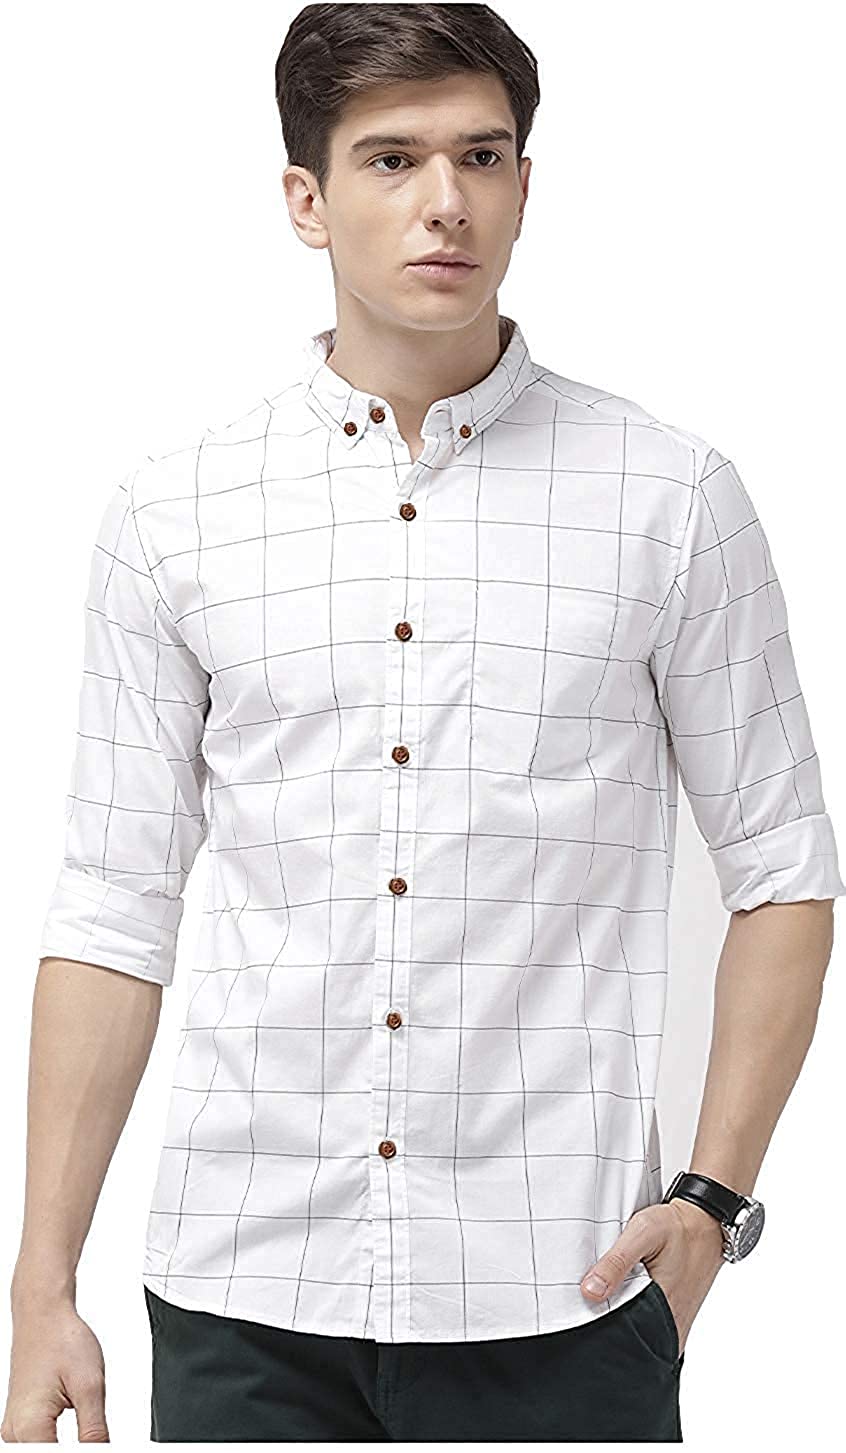 Men’s Cotton Casual Shirt for Men Full Sleeves